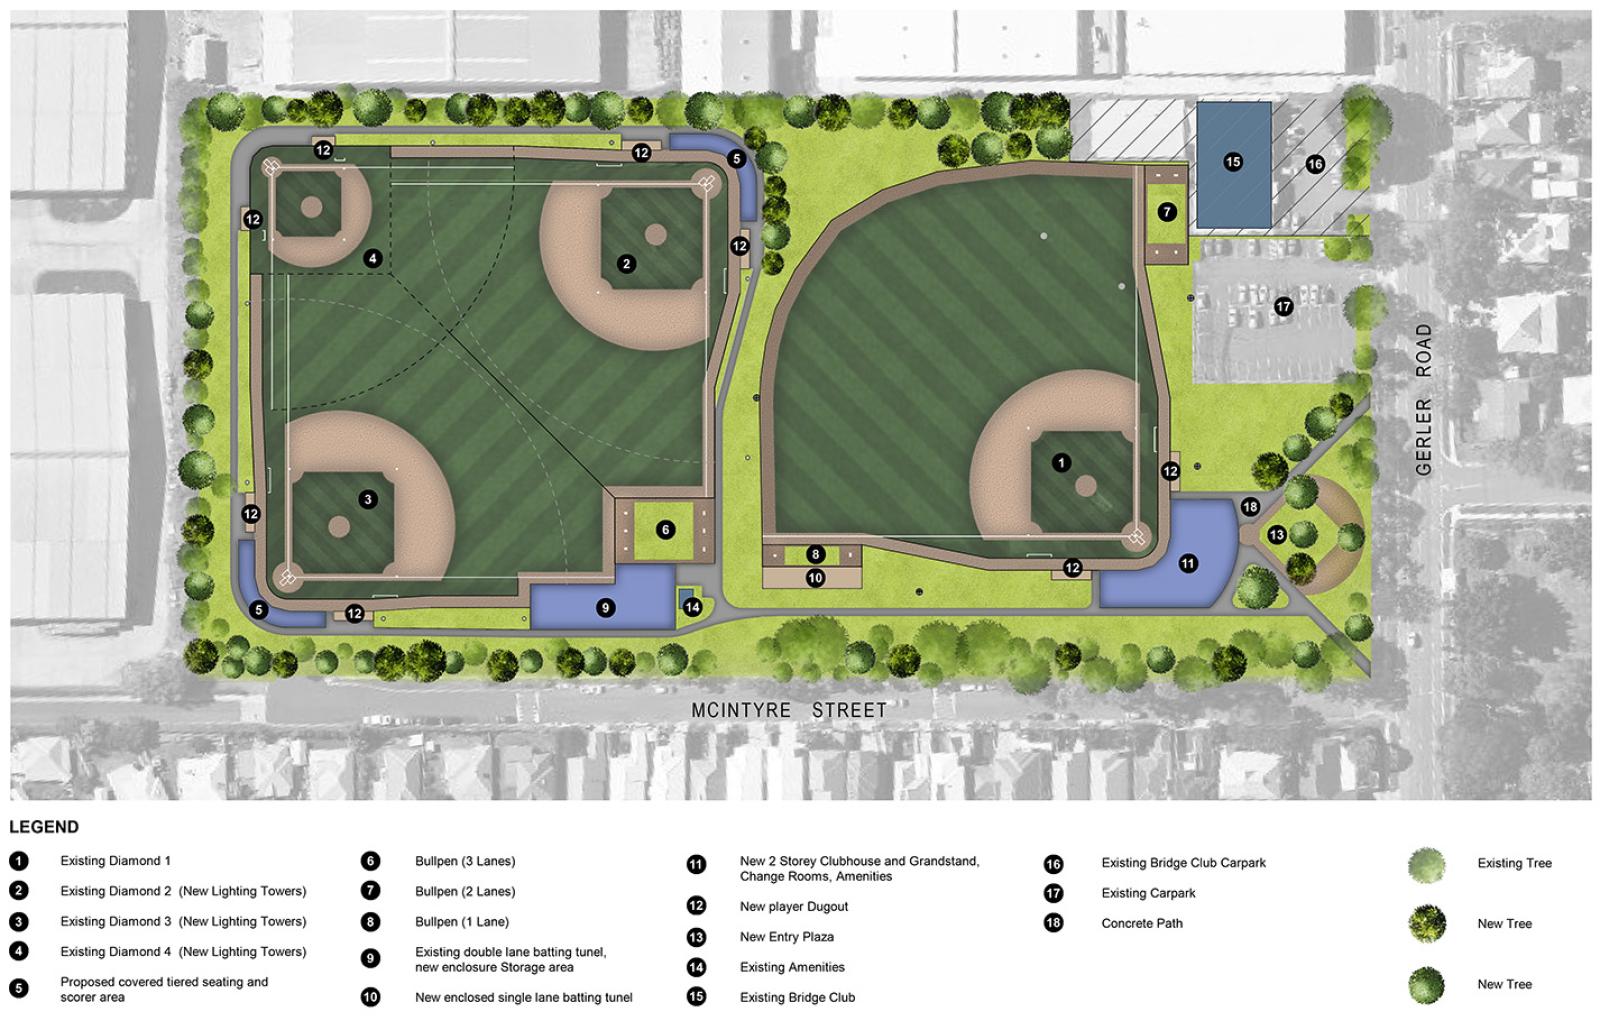 banister park baseball master plan